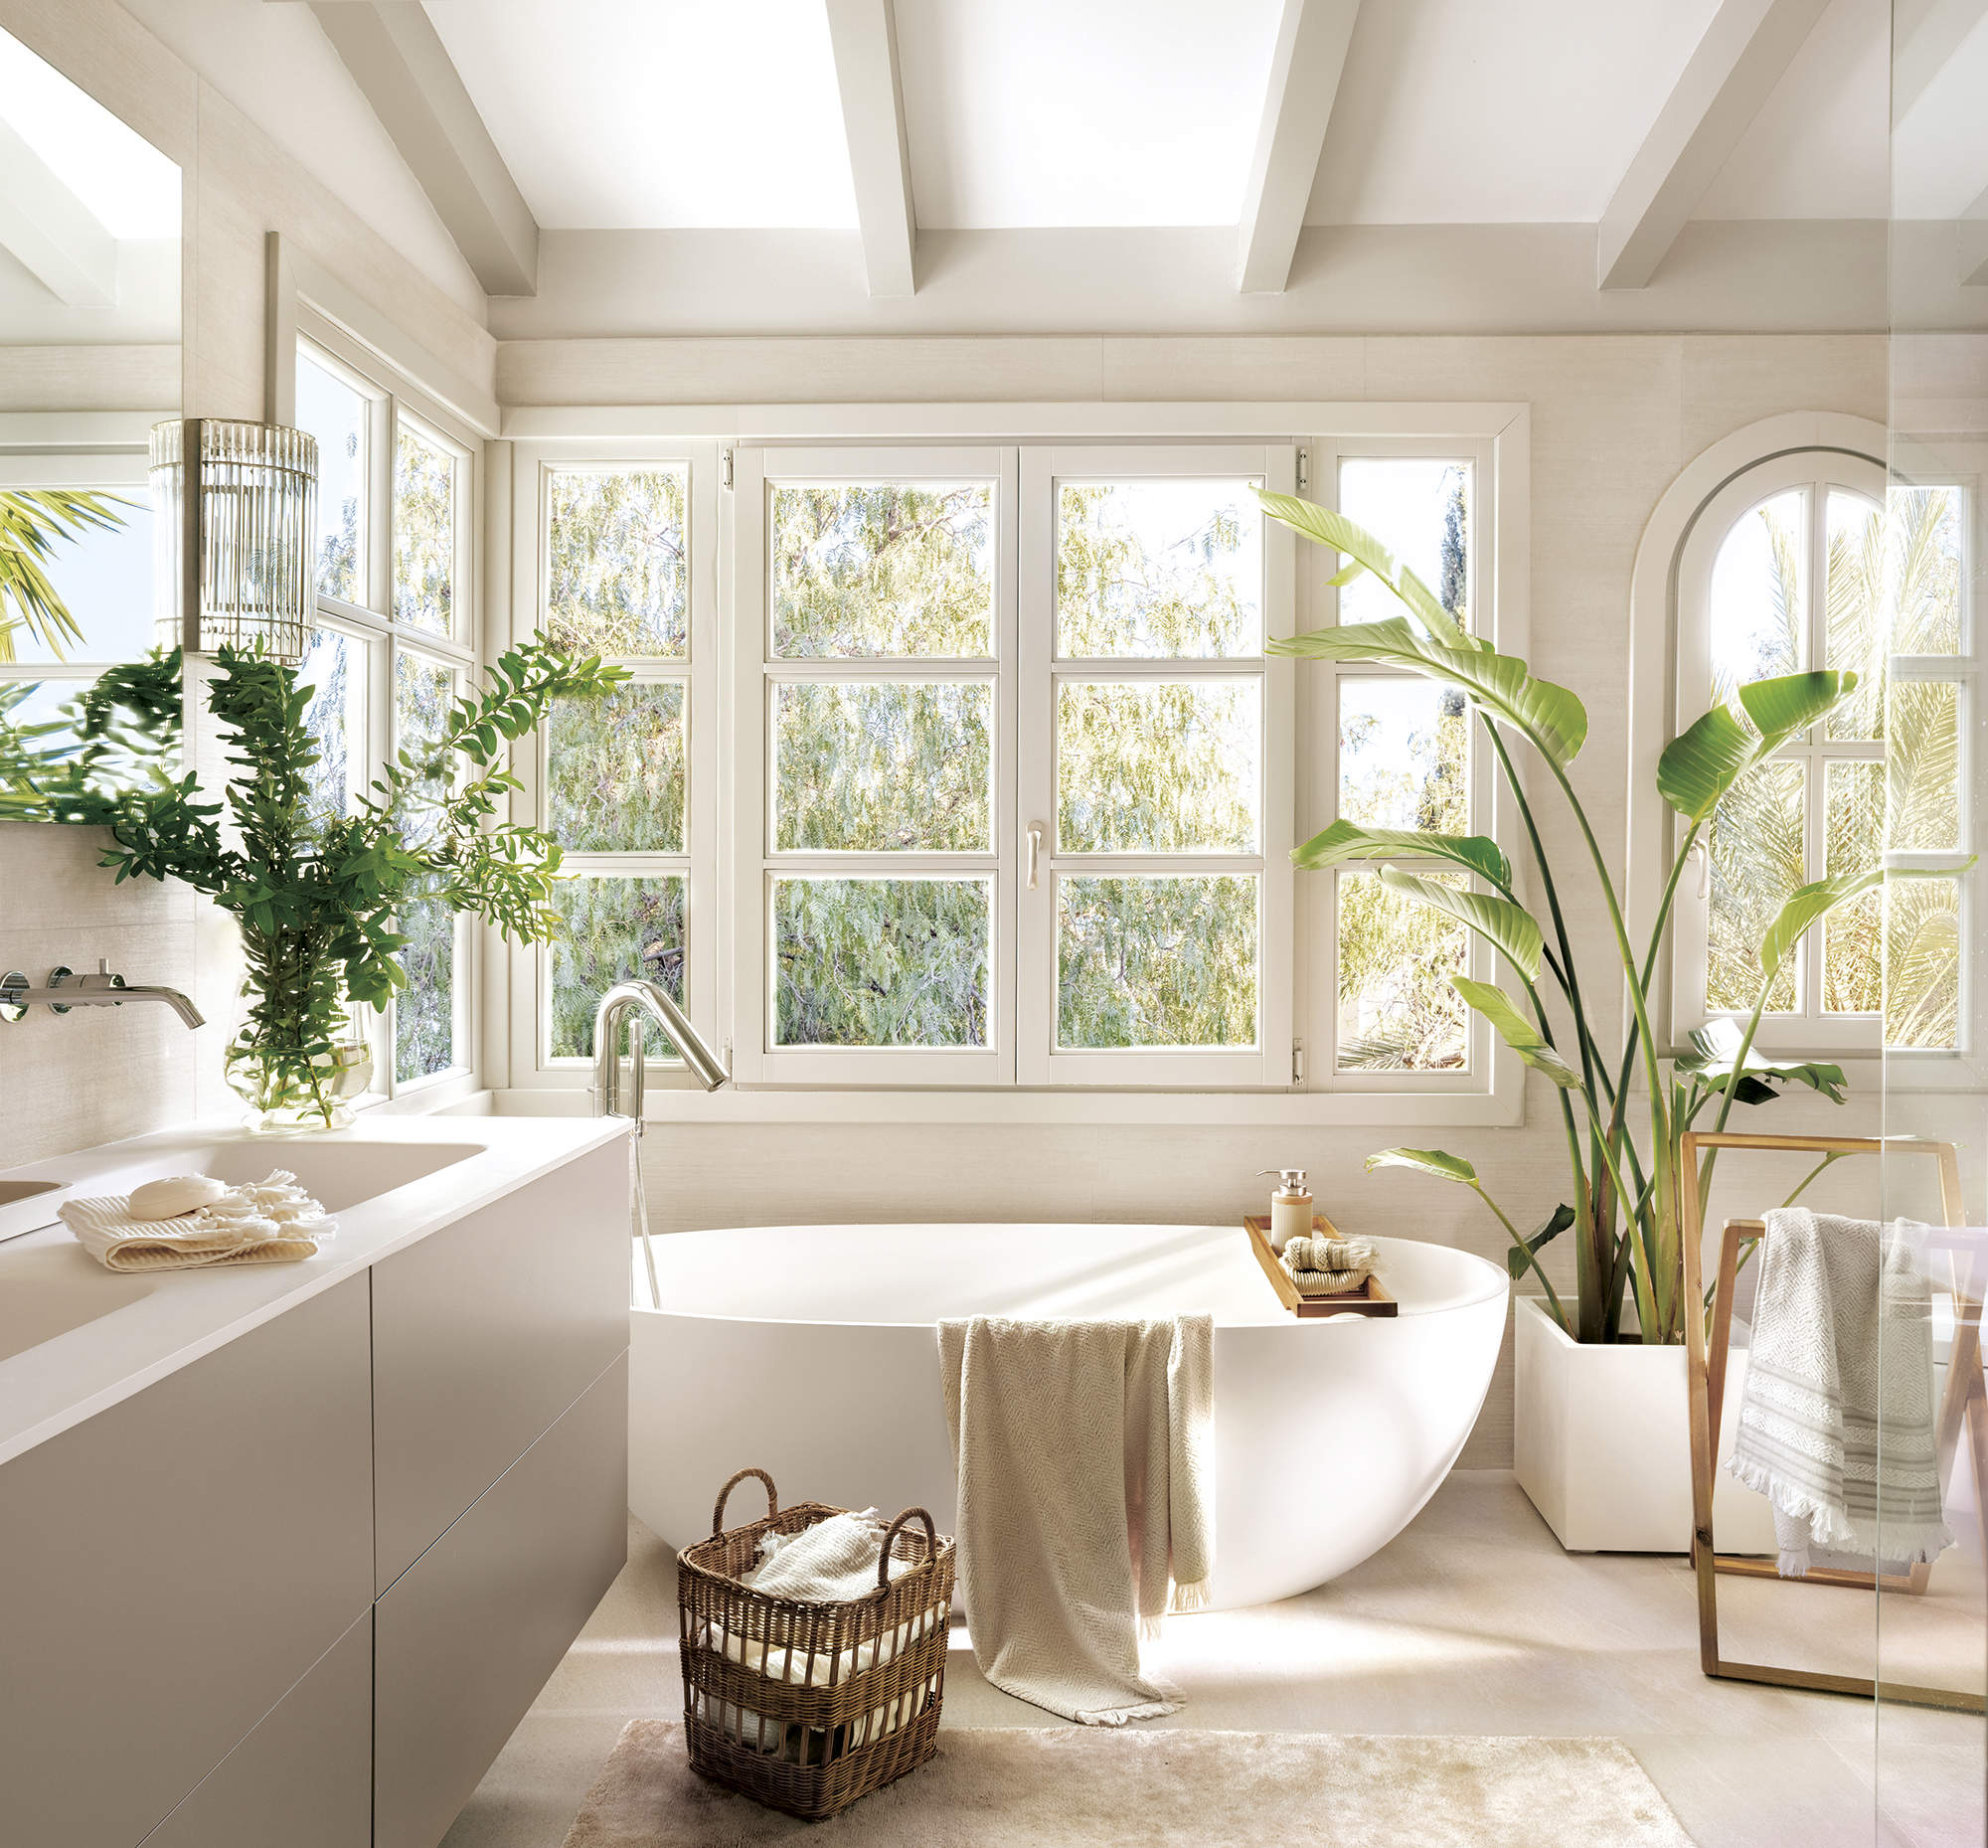 baño grande con bañera externa blanca y mueble de lavabo de dos senos, plantas, suelo de piedra con alfombra beige, gran ventanal.